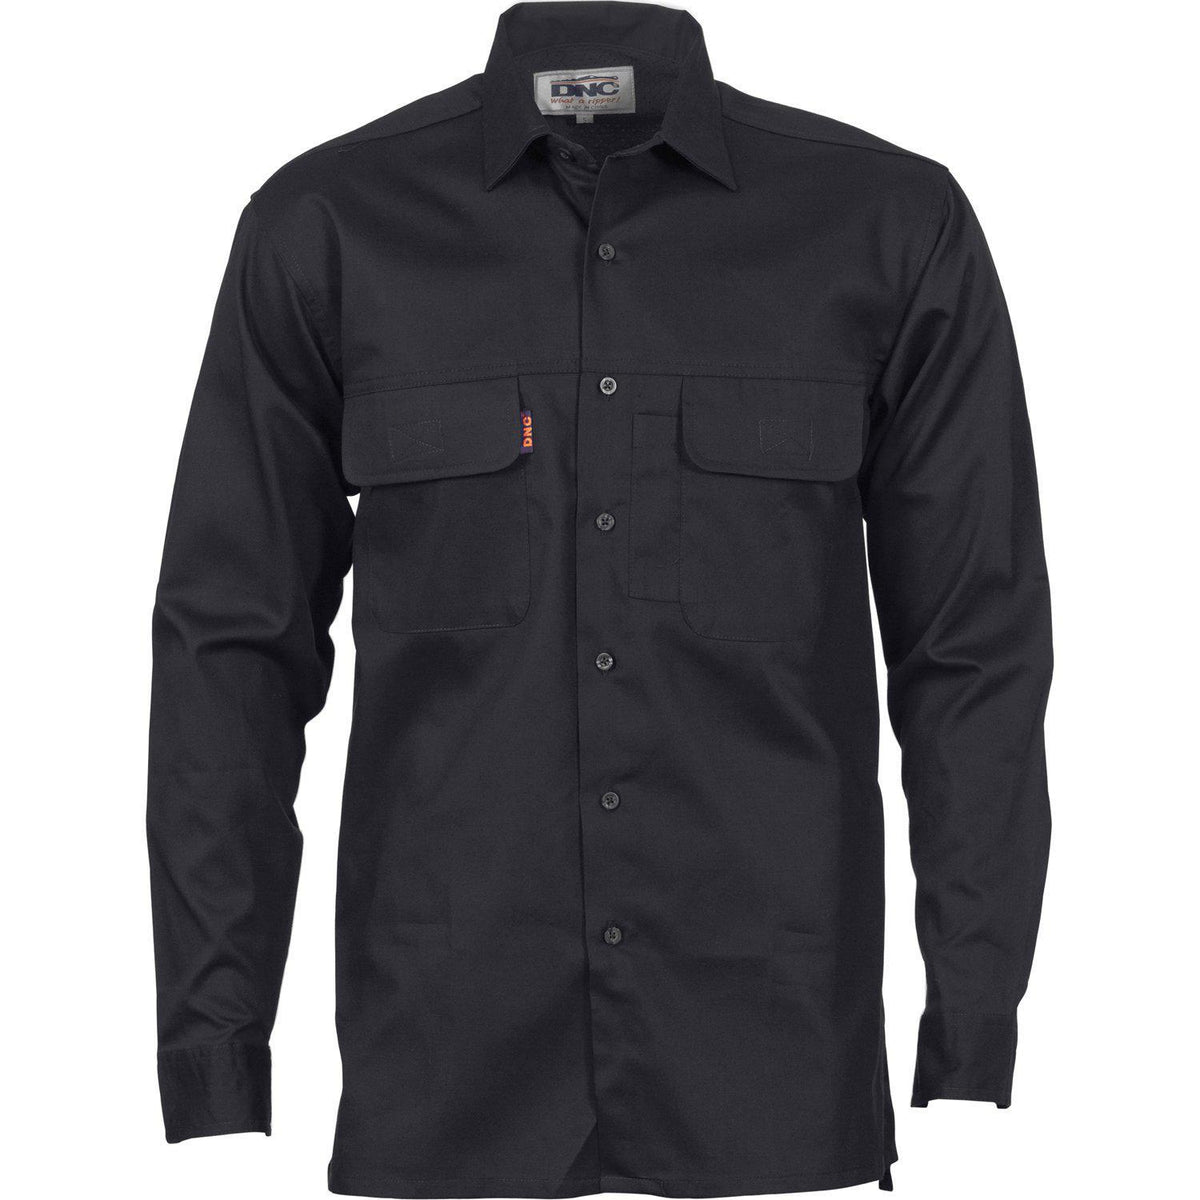 Buy DNC 3-Way Cool Breeze Long Sleeve Shirt - 3224 Online | Queensland ...